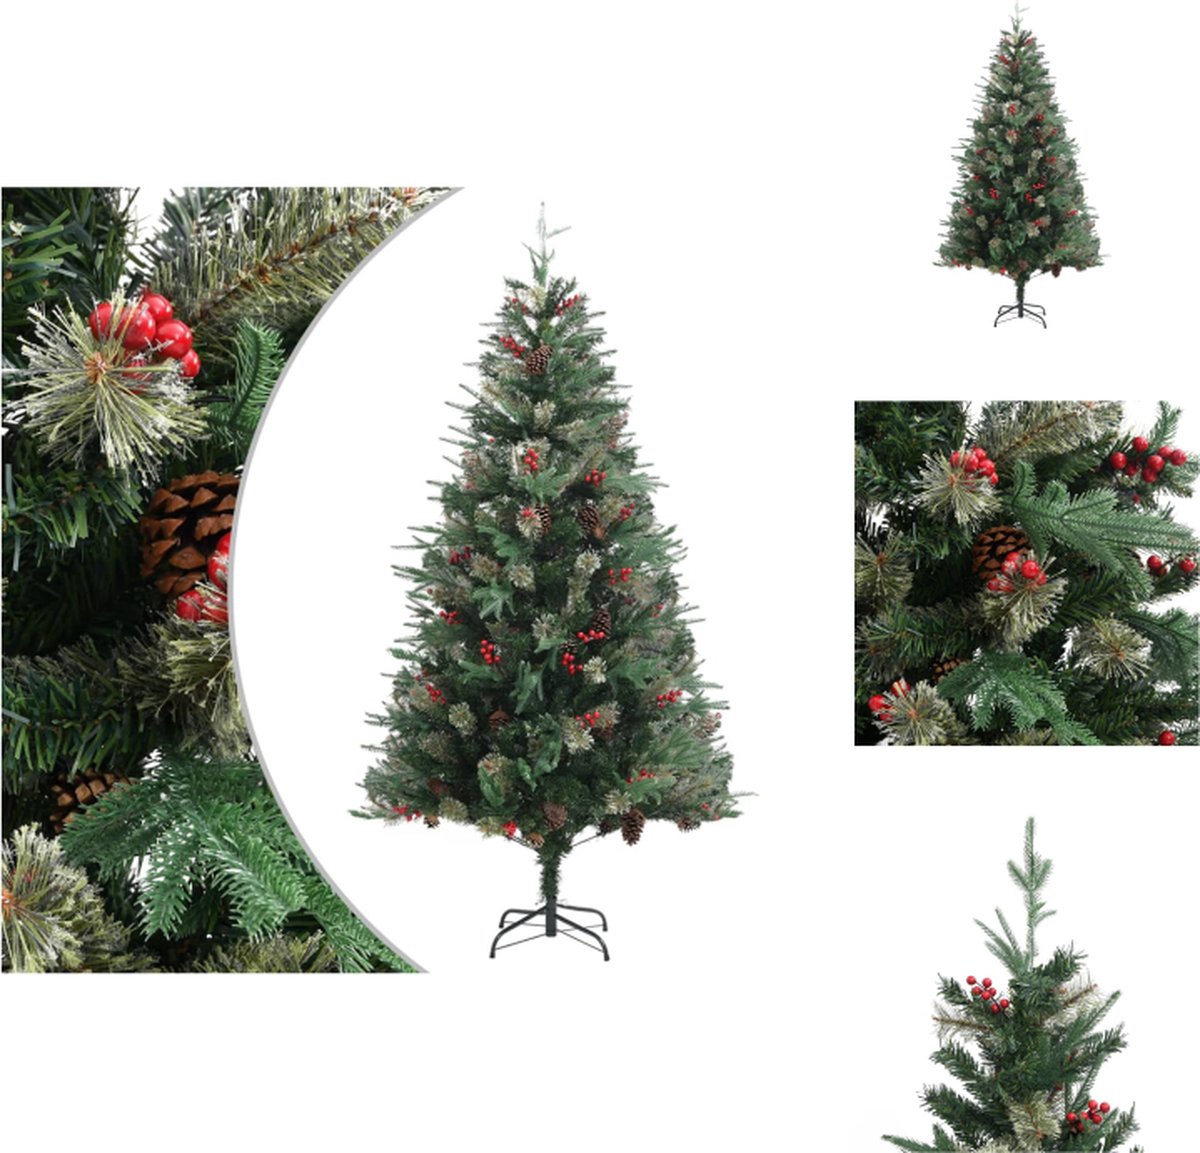 vidaXL Kerstboom met takken - PVC/PE - 195 cm - Groen - 684 PVC/117 PE uiteinden - 30 kleine dennenappels/30 grote dennenappels/60 rode bessen - Scharnierende constructie - Eenvoudige montage - Met standaard - vidaXL - Decoratieve kerstboom